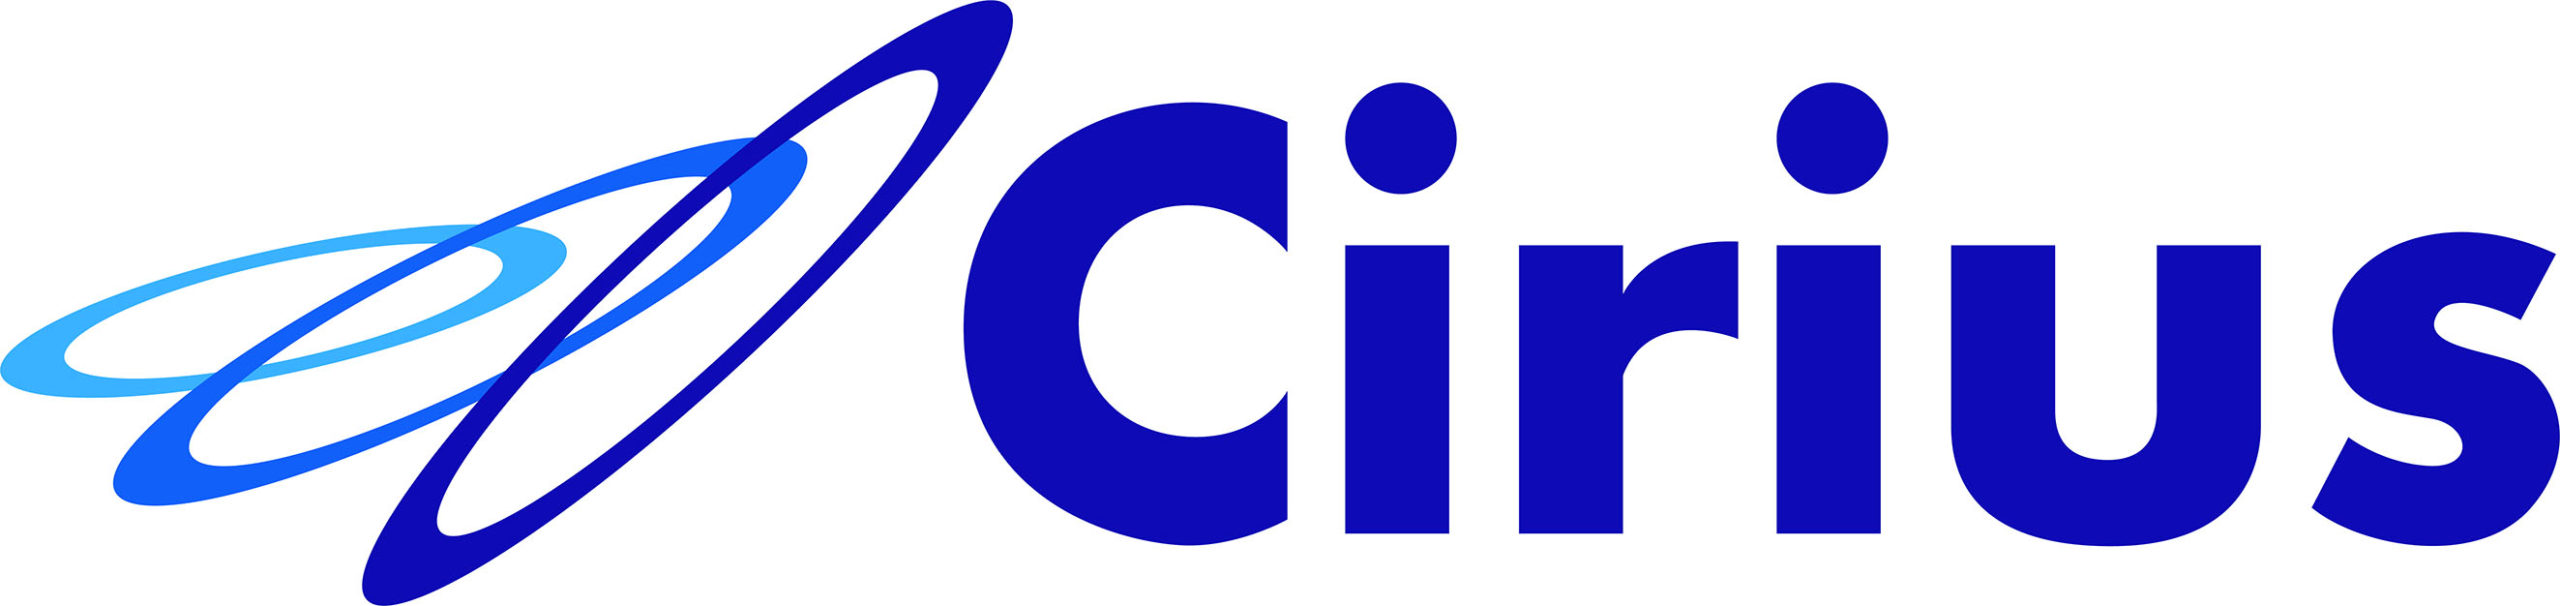 Infinx Logo